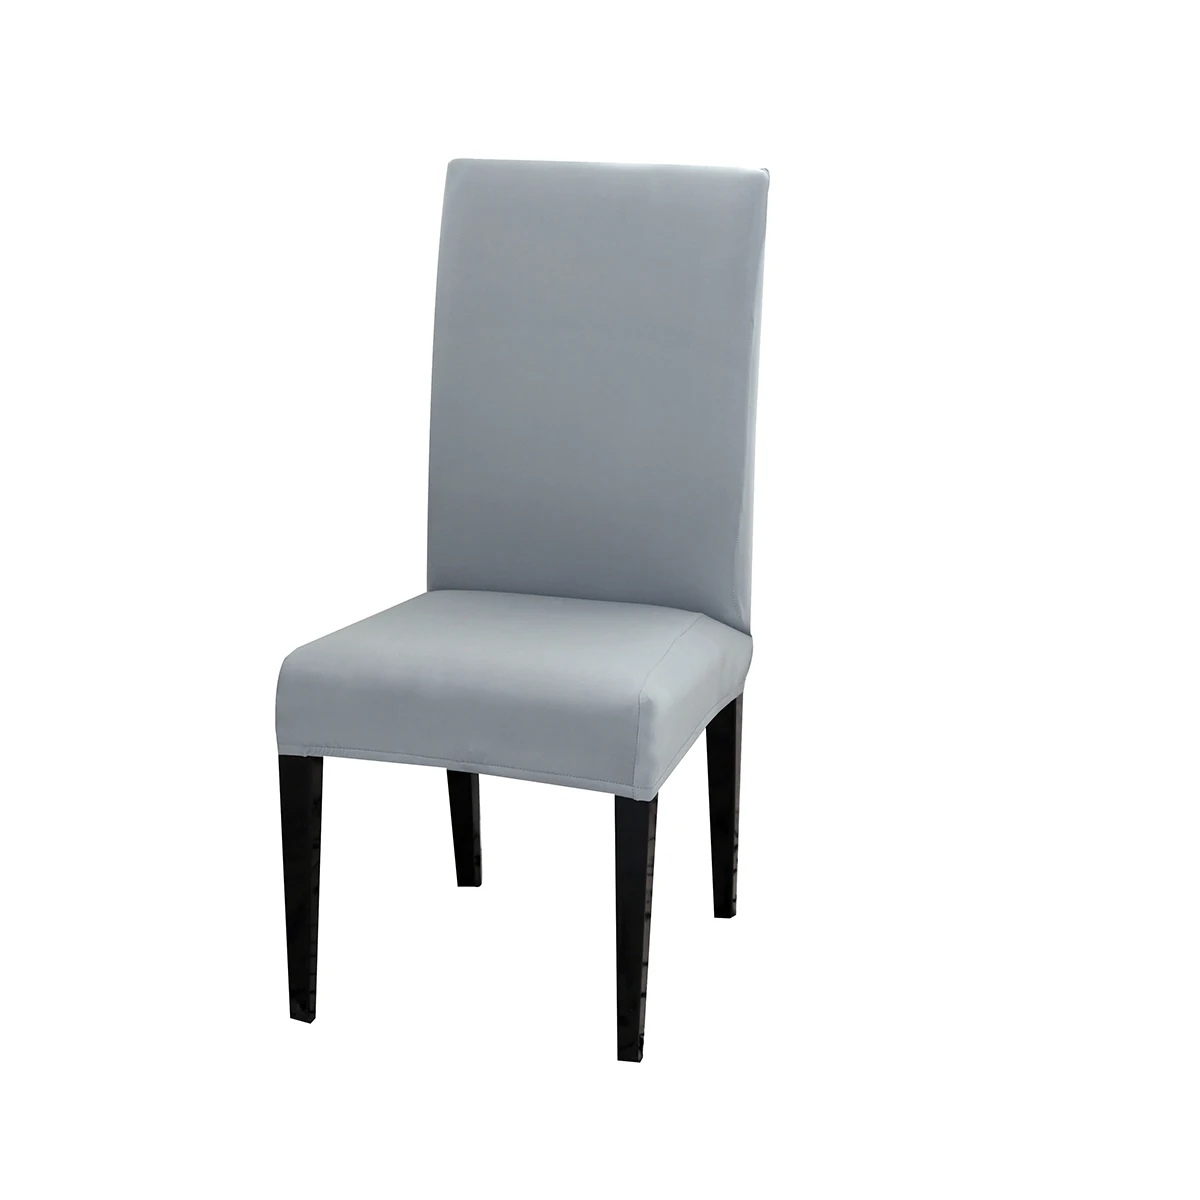 Чехол для кресла спандекс растягивающийся чехол для свадебного банкета вечерние Чехлы для стула декор для столовой ресторана отеля D20 - Цвет: Light Gray